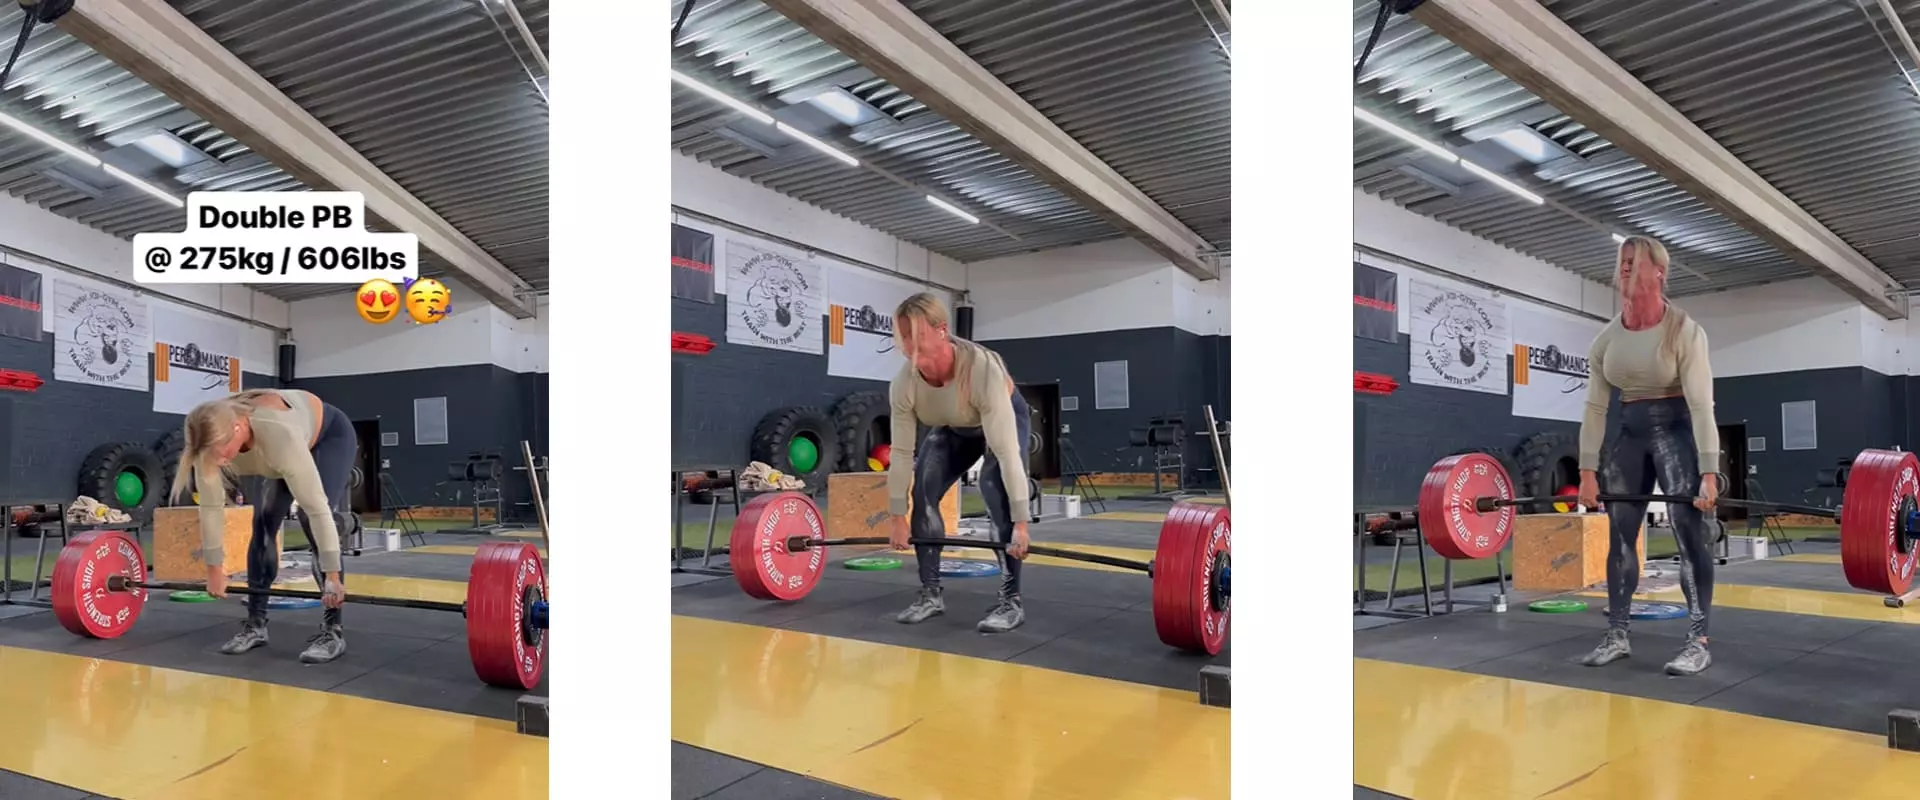 La powerlifteuse Denise Herber réalise un record personnel de 275 kg de soulevé de terre